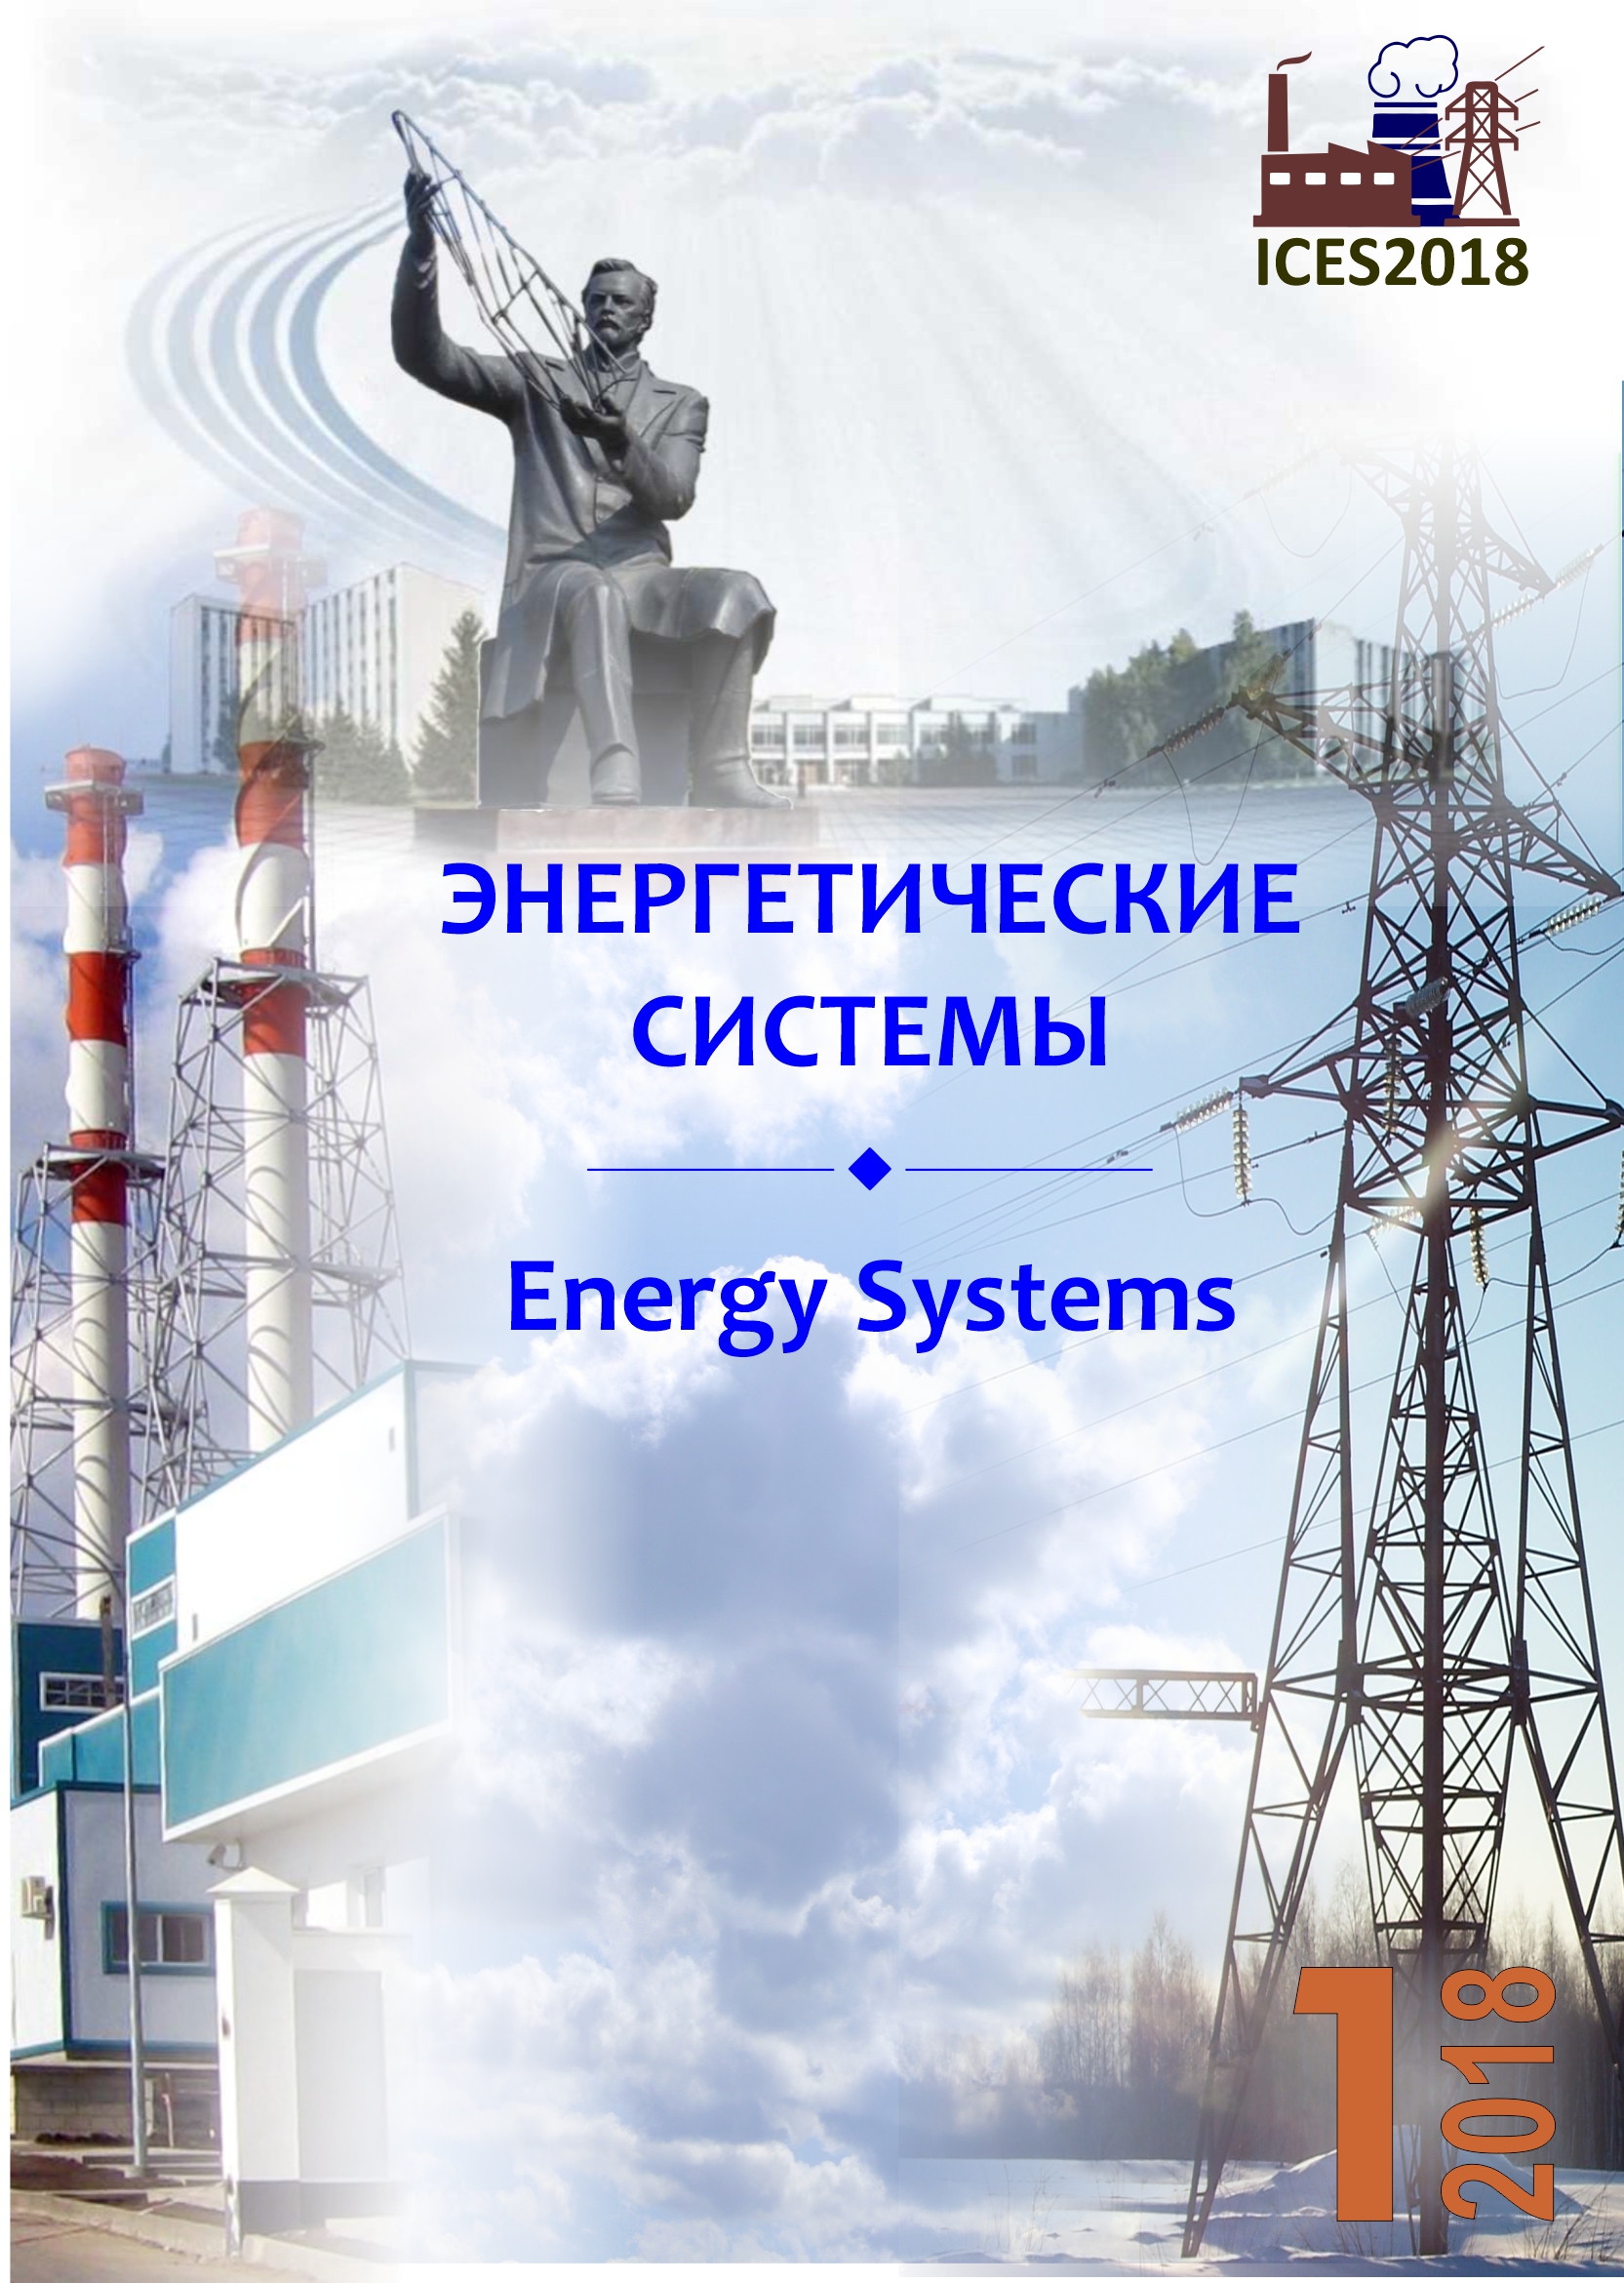 					Показать Том 3 № 1 (2018): III международная научно-техническая конференция «Энергетические системы» (ICES-2018)
				